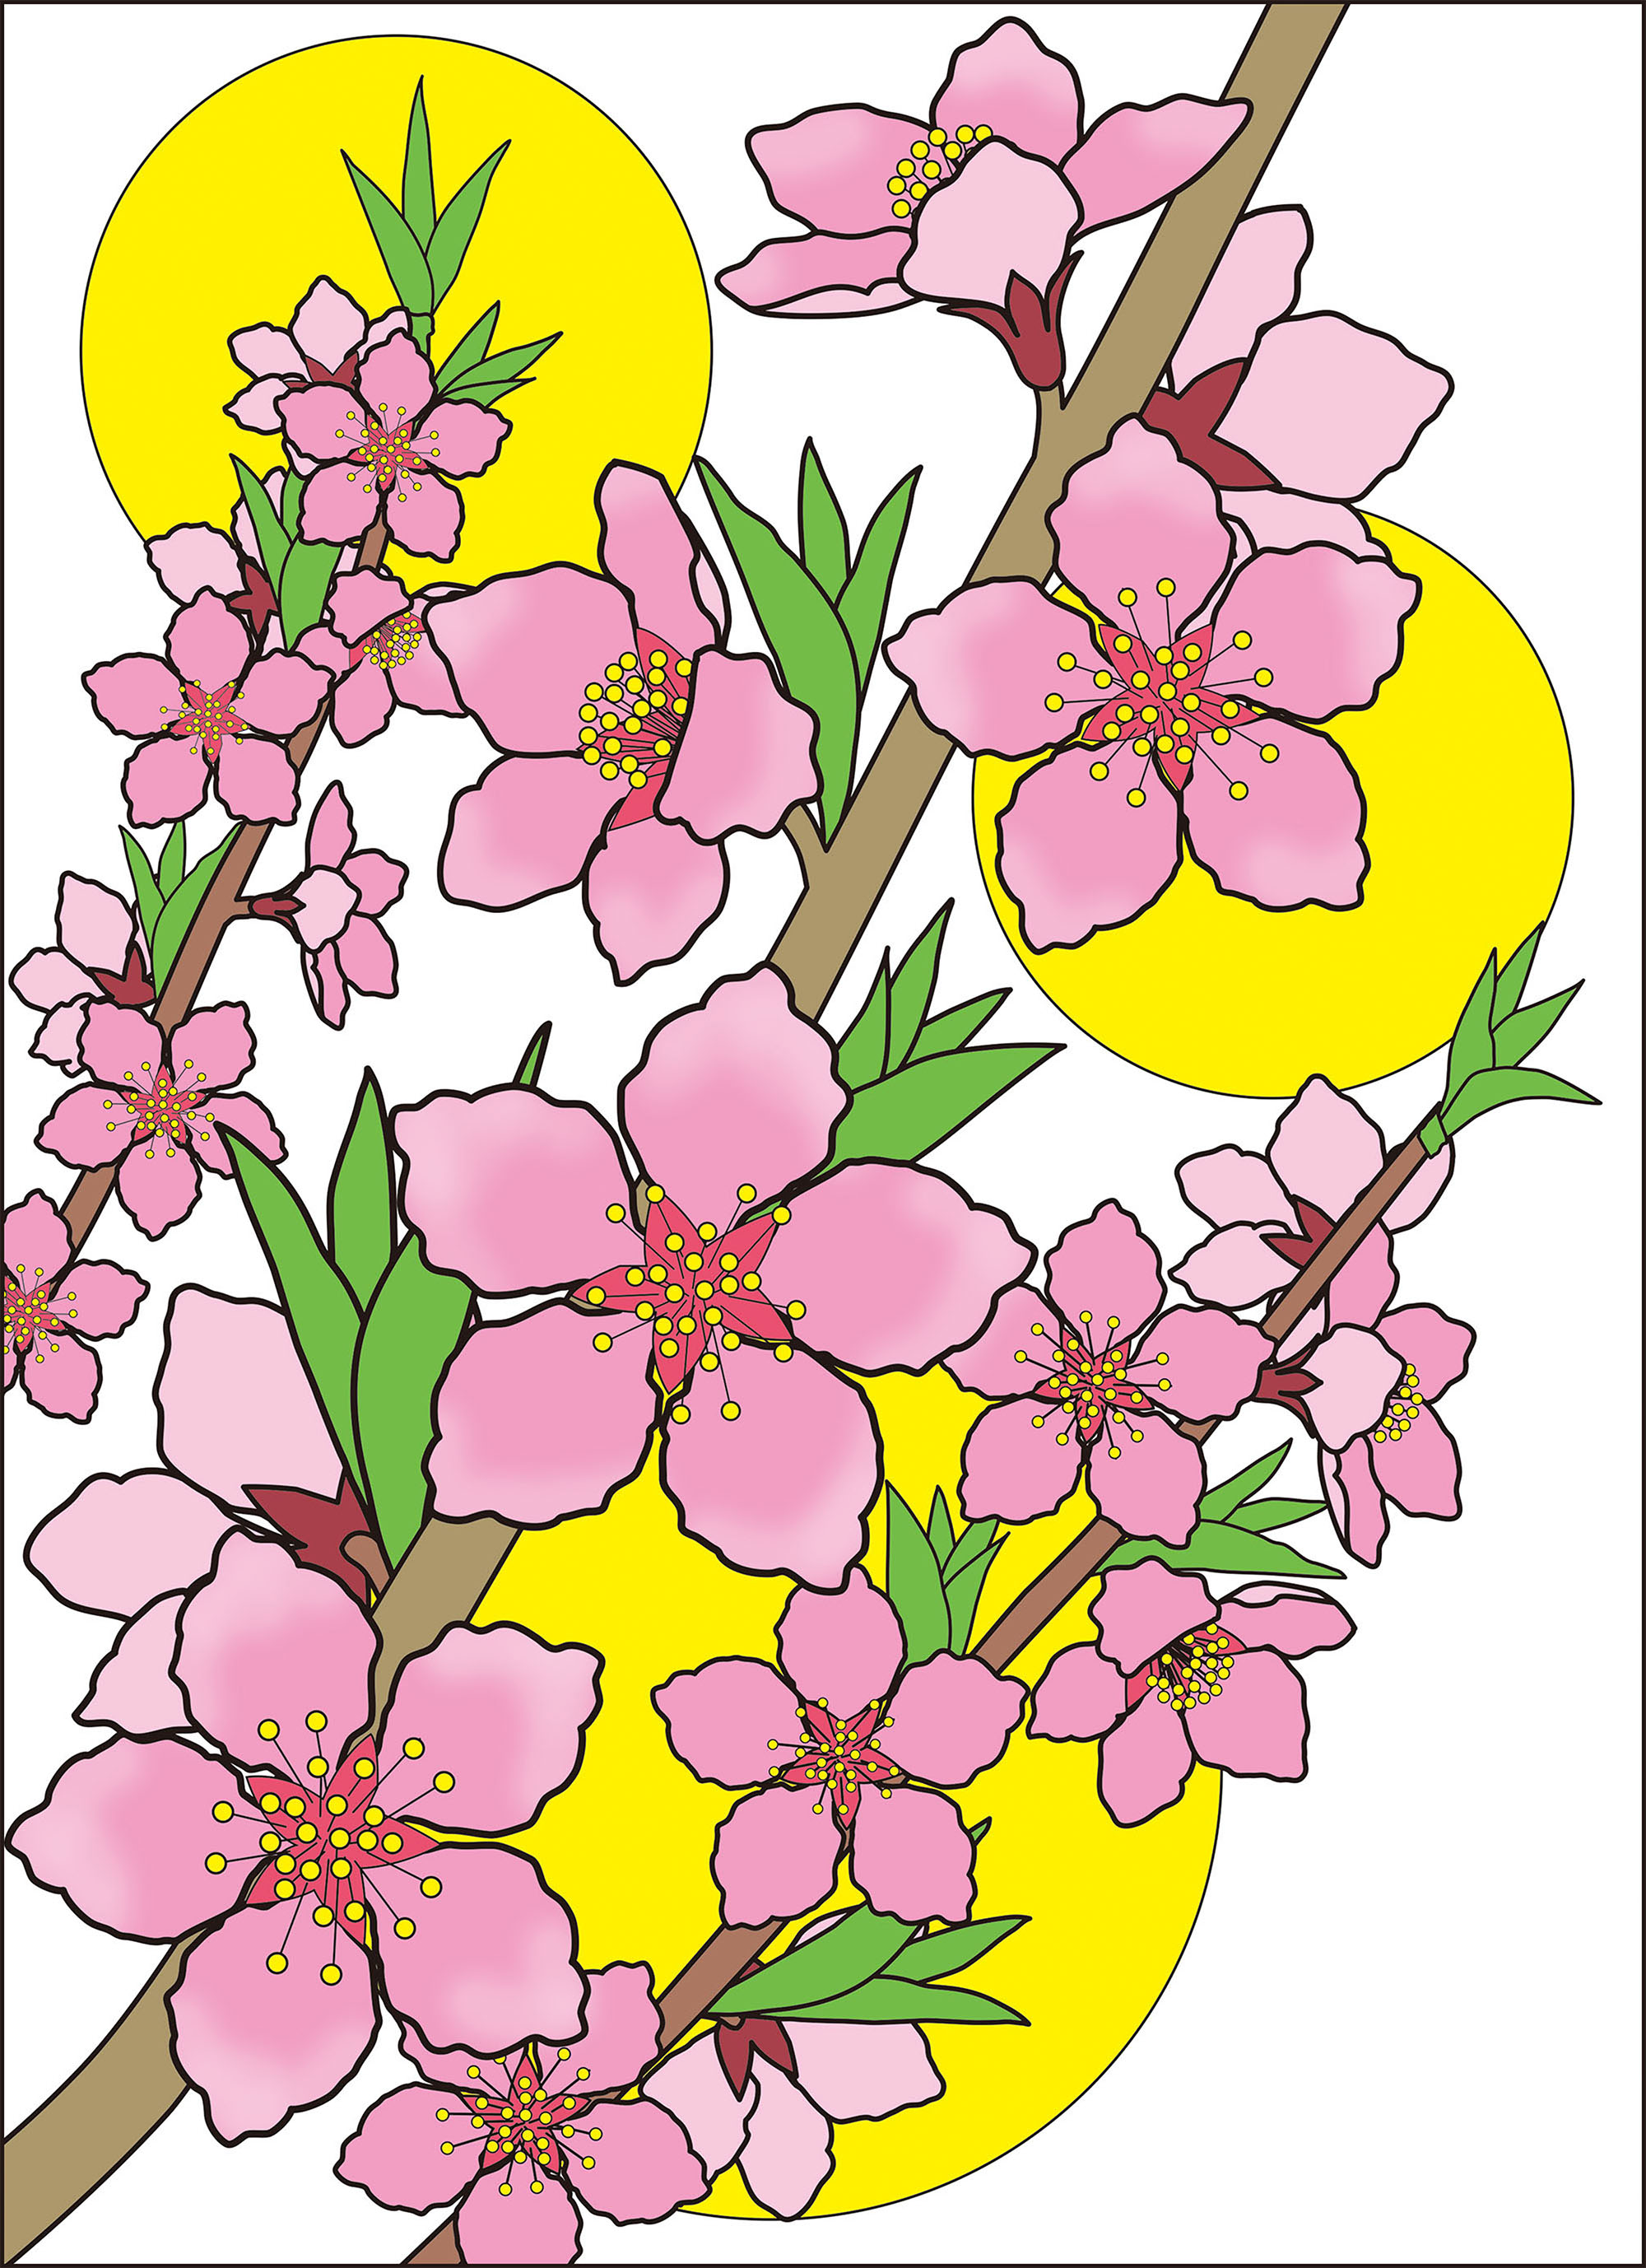 高齢者レク素材 桃の花 定番塗り絵 介護レク広場 レク素材やレクネタ 企画書 の無料ダウンロード